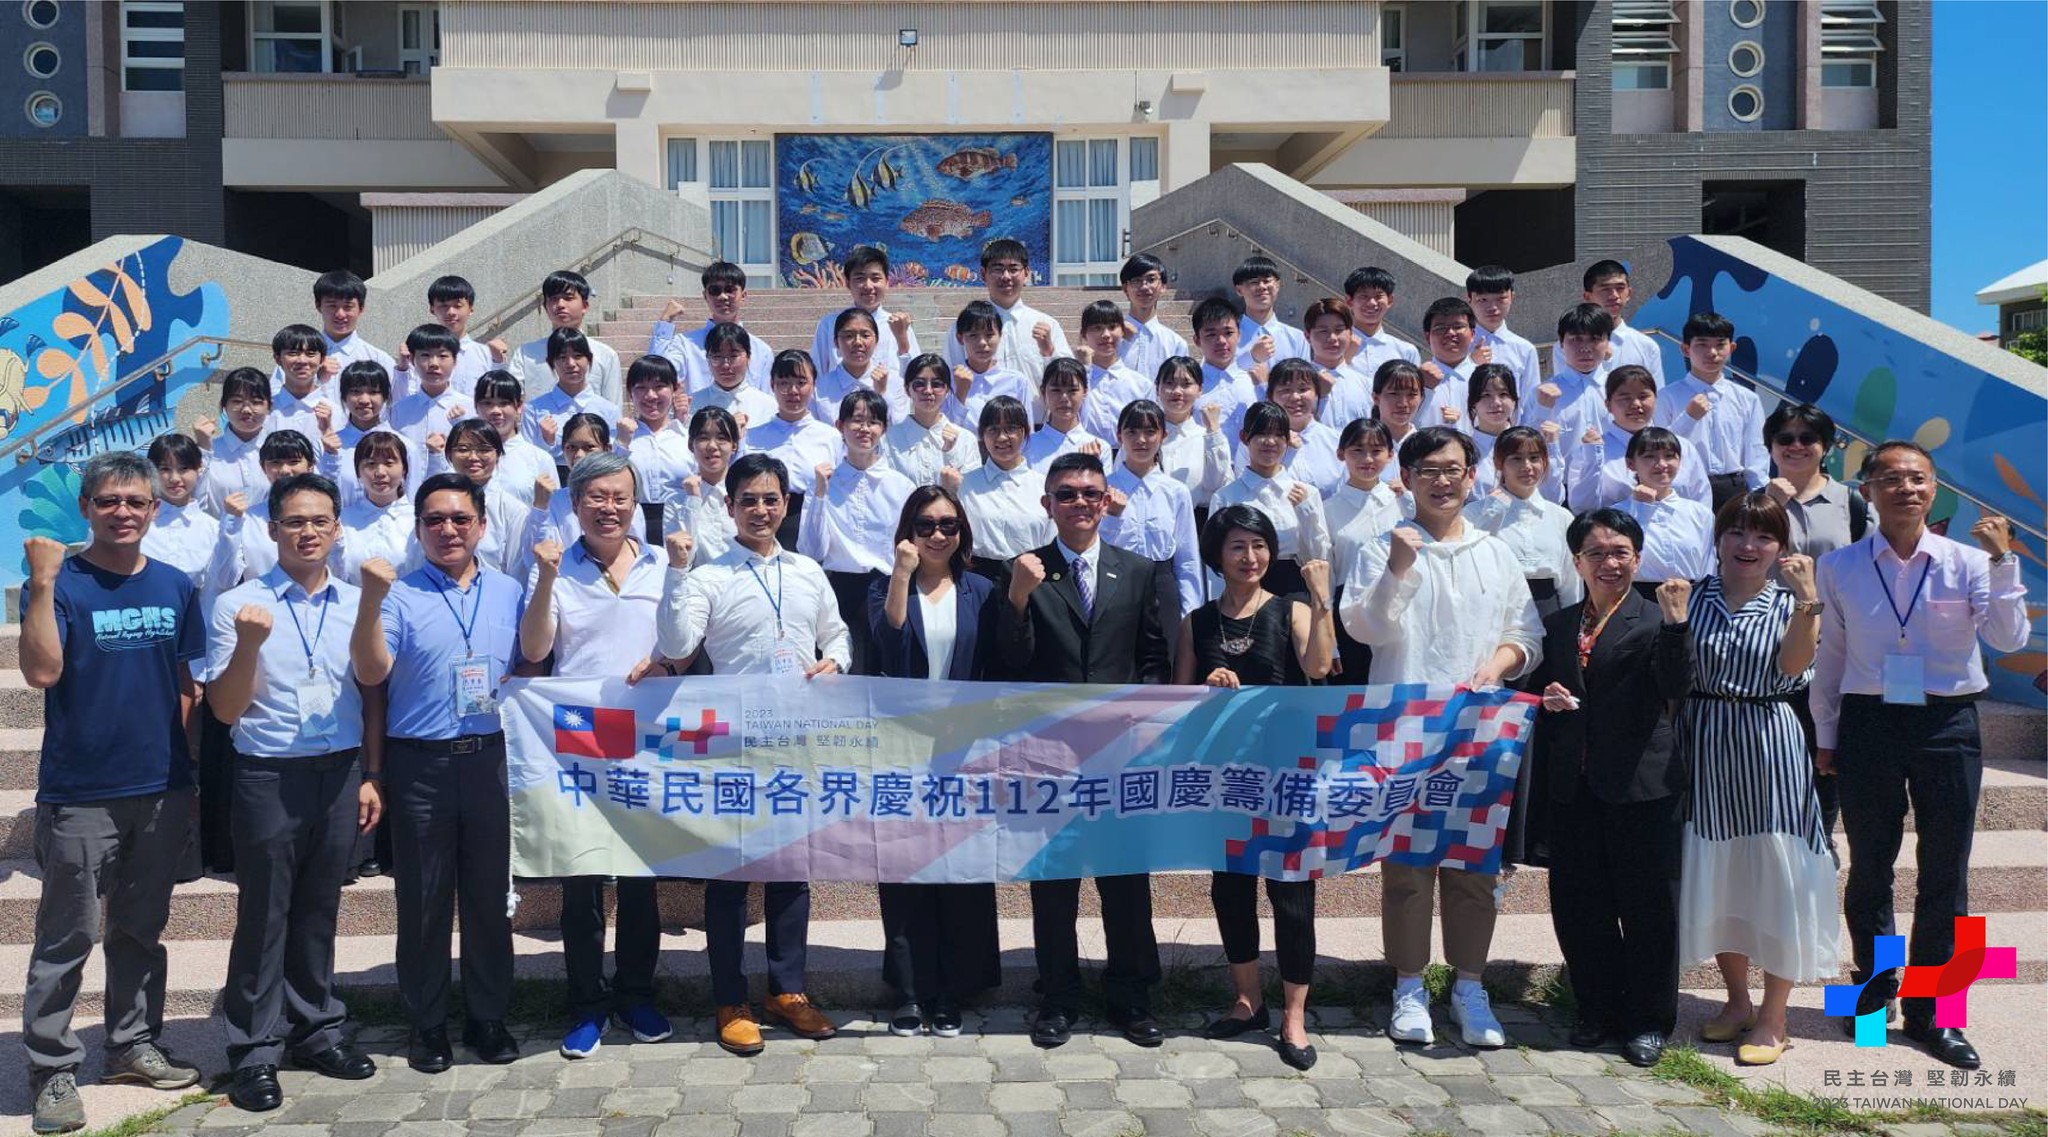 Dàn hợp xướng trường trung học Ma-gong, Bành Hồ được chọn hát lĩnh xướng Quốc ca tại Lễ Quốc khánh năm nay